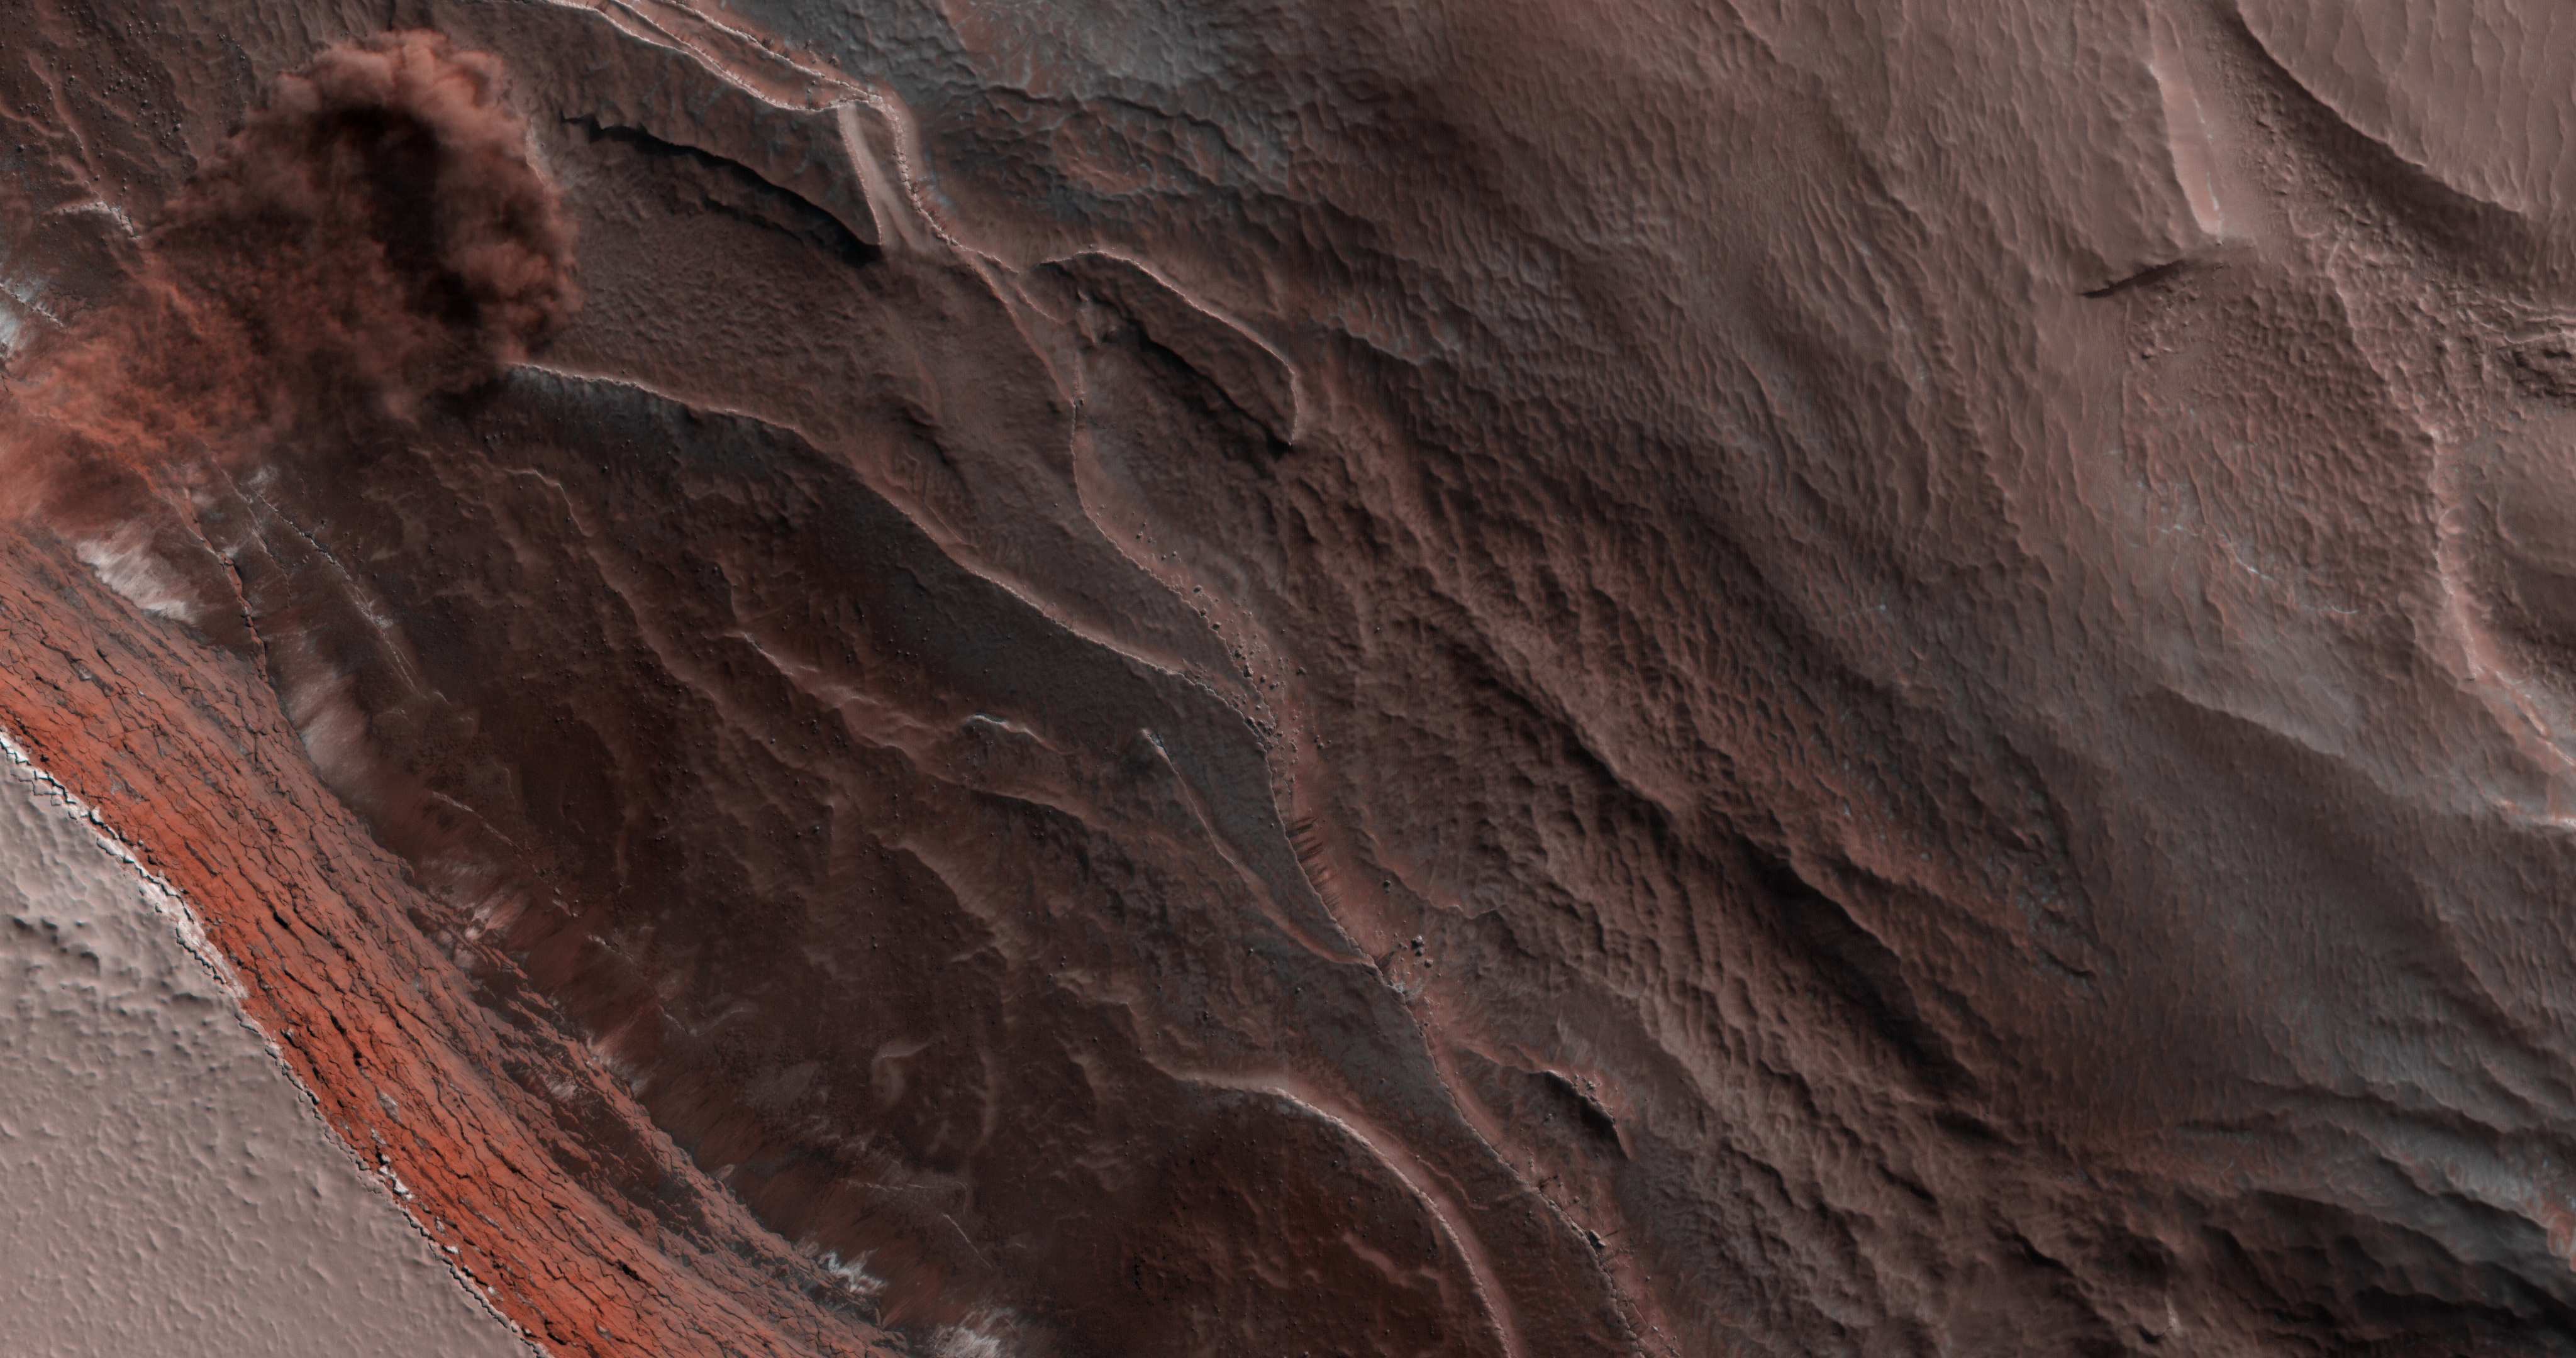 MARRAINE. Image INCROYABLE de Mars qui a CHOQUÉ l'avalanche d'Internet